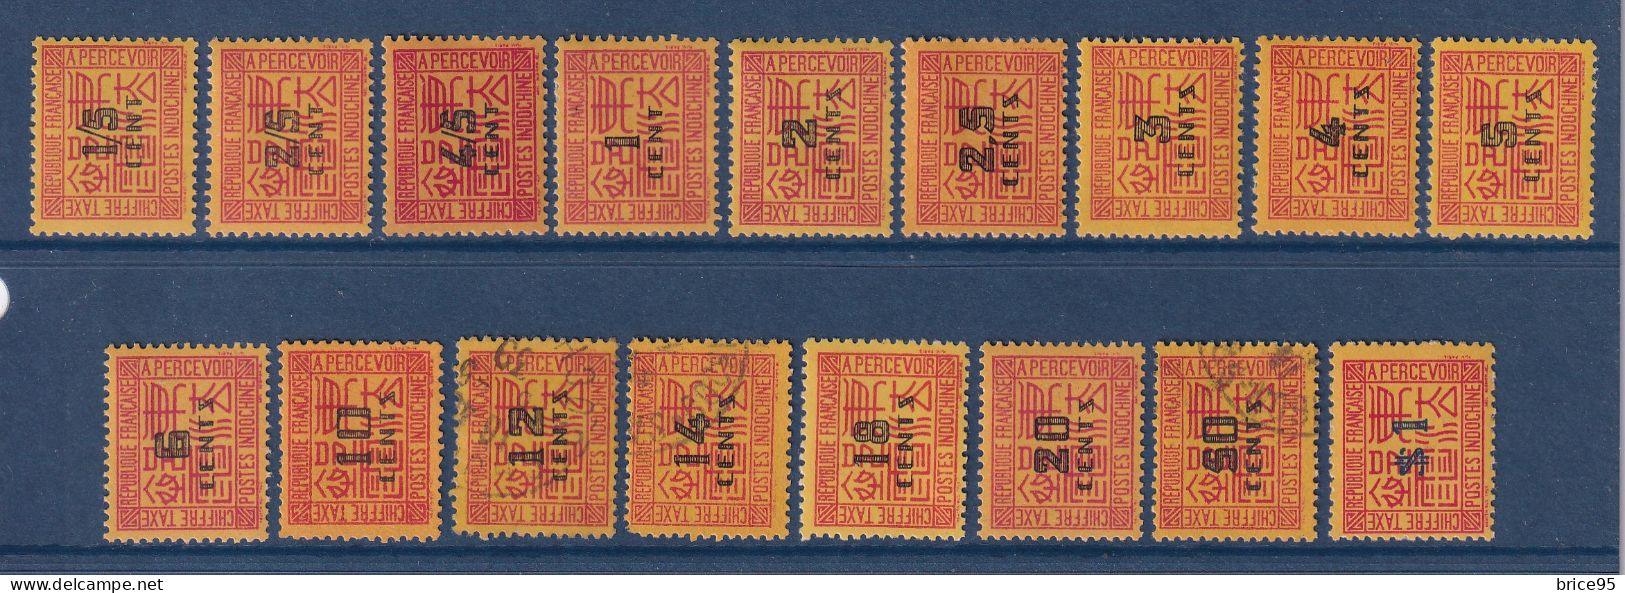 Indochine - Taxe - YT N° 57 à 73 - Neuf Avec Charnière Et Oblitéré - Manque N° 74 - 1931 à 1941 - Segnatasse